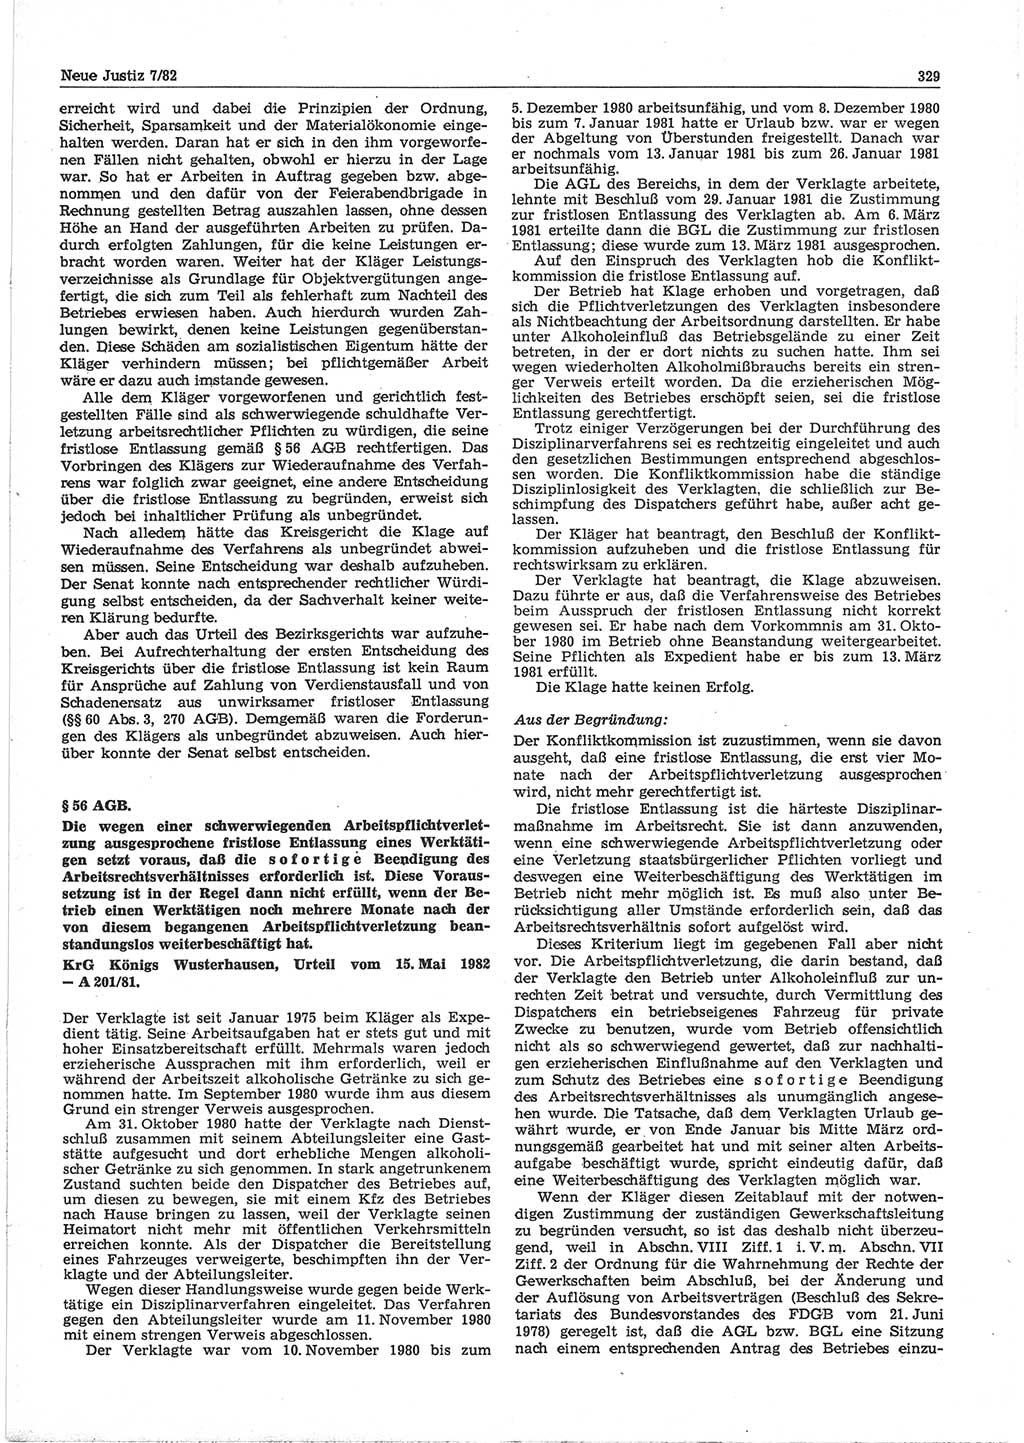 Neue Justiz (NJ), Zeitschrift für sozialistisches Recht und Gesetzlichkeit [Deutsche Demokratische Republik (DDR)], 36. Jahrgang 1982, Seite 329 (NJ DDR 1982, S. 329)